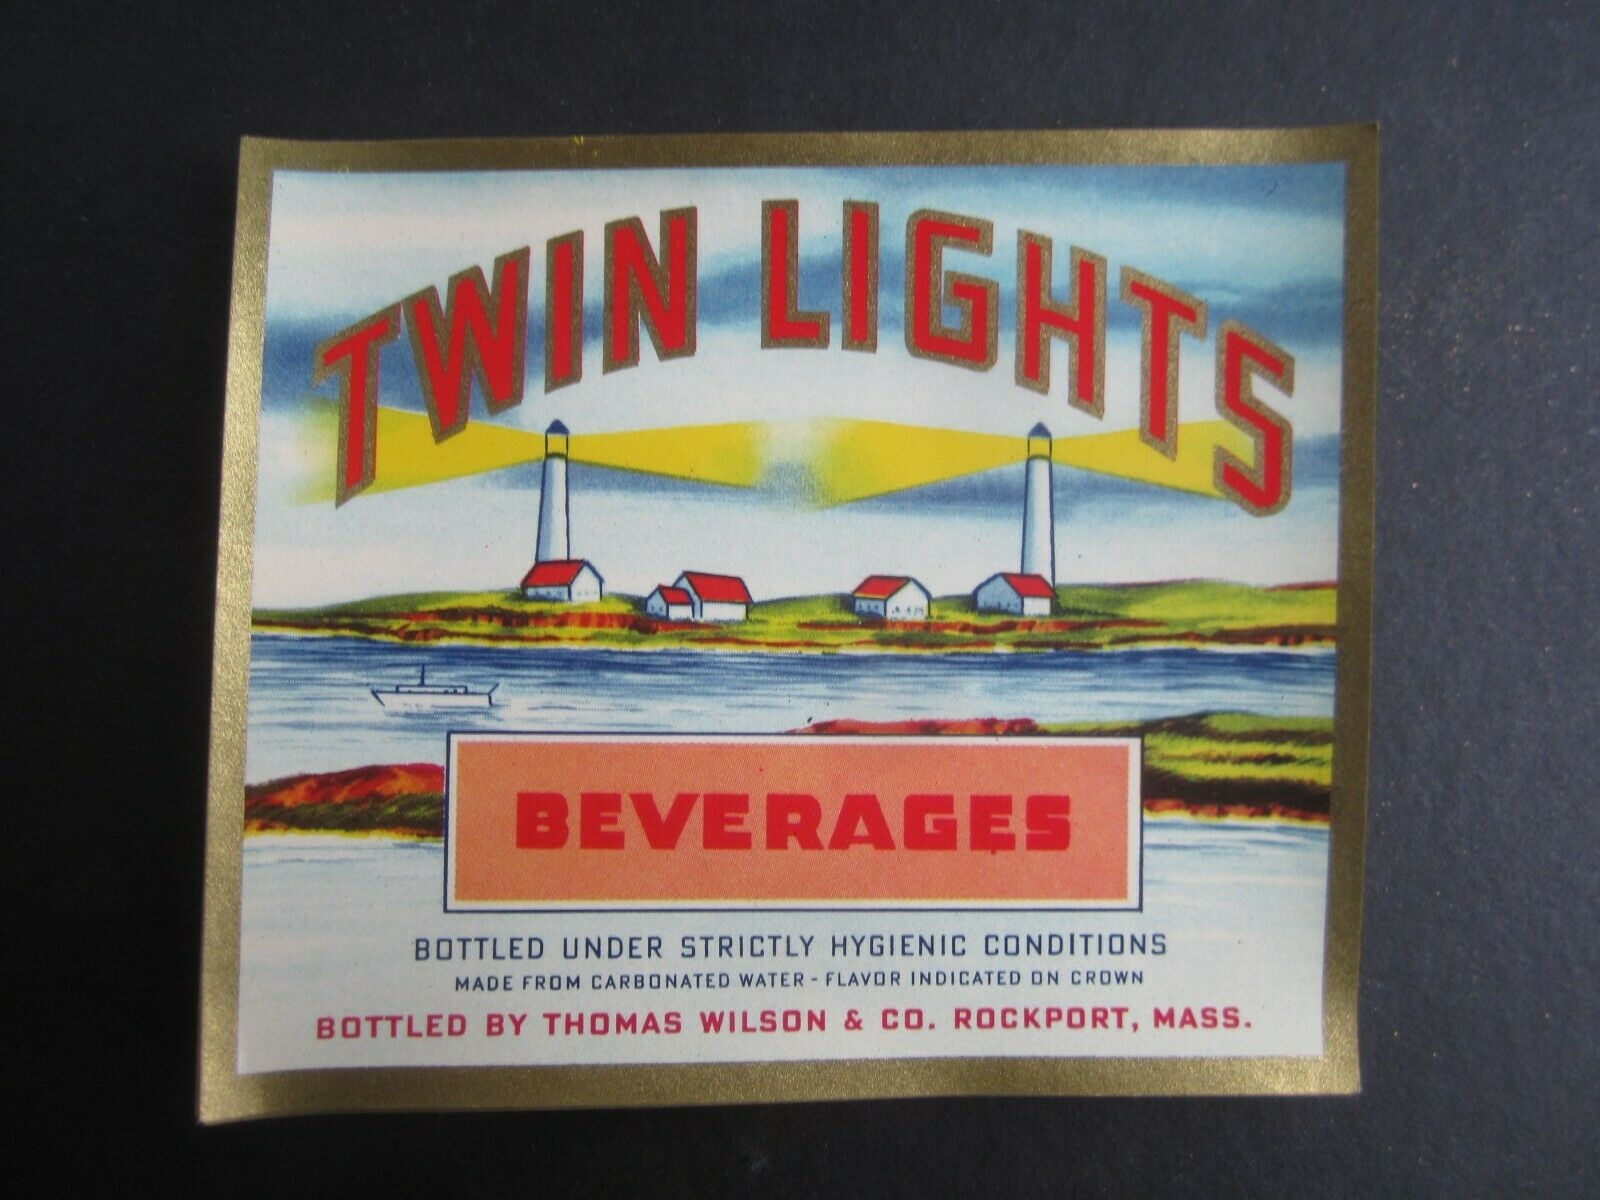  Lot of 50 Old Vintage TWIN LIGHTS Beverages - ...